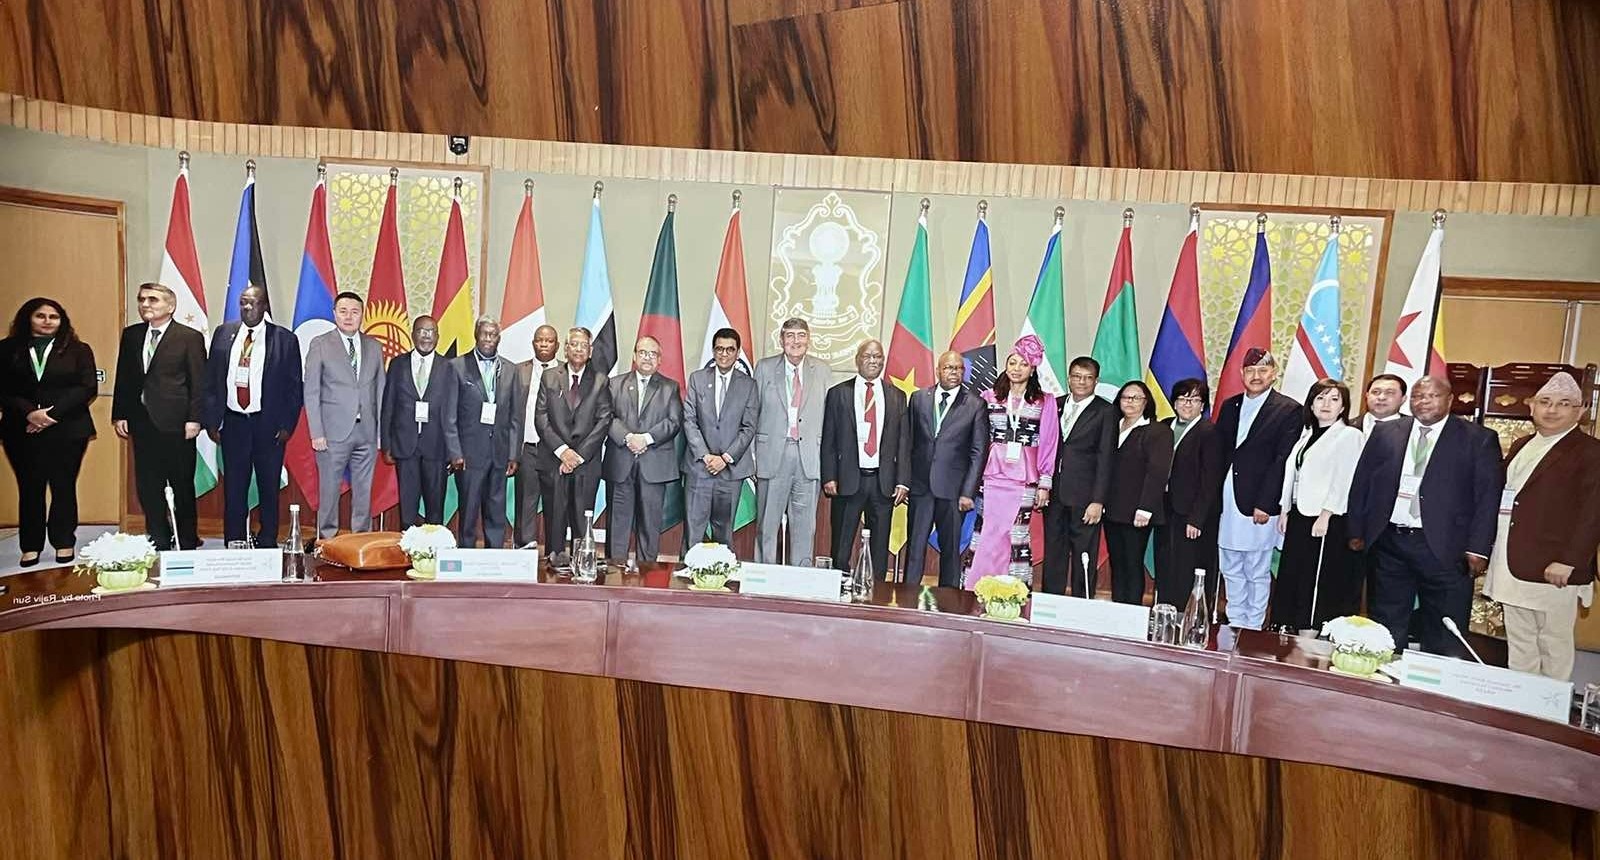 कानुनी सहायतासम्बन्धी सम्मेलन भारतमा सम्पन्न: नेपालका प्रधानन्यायाधीशसहित सहभागी